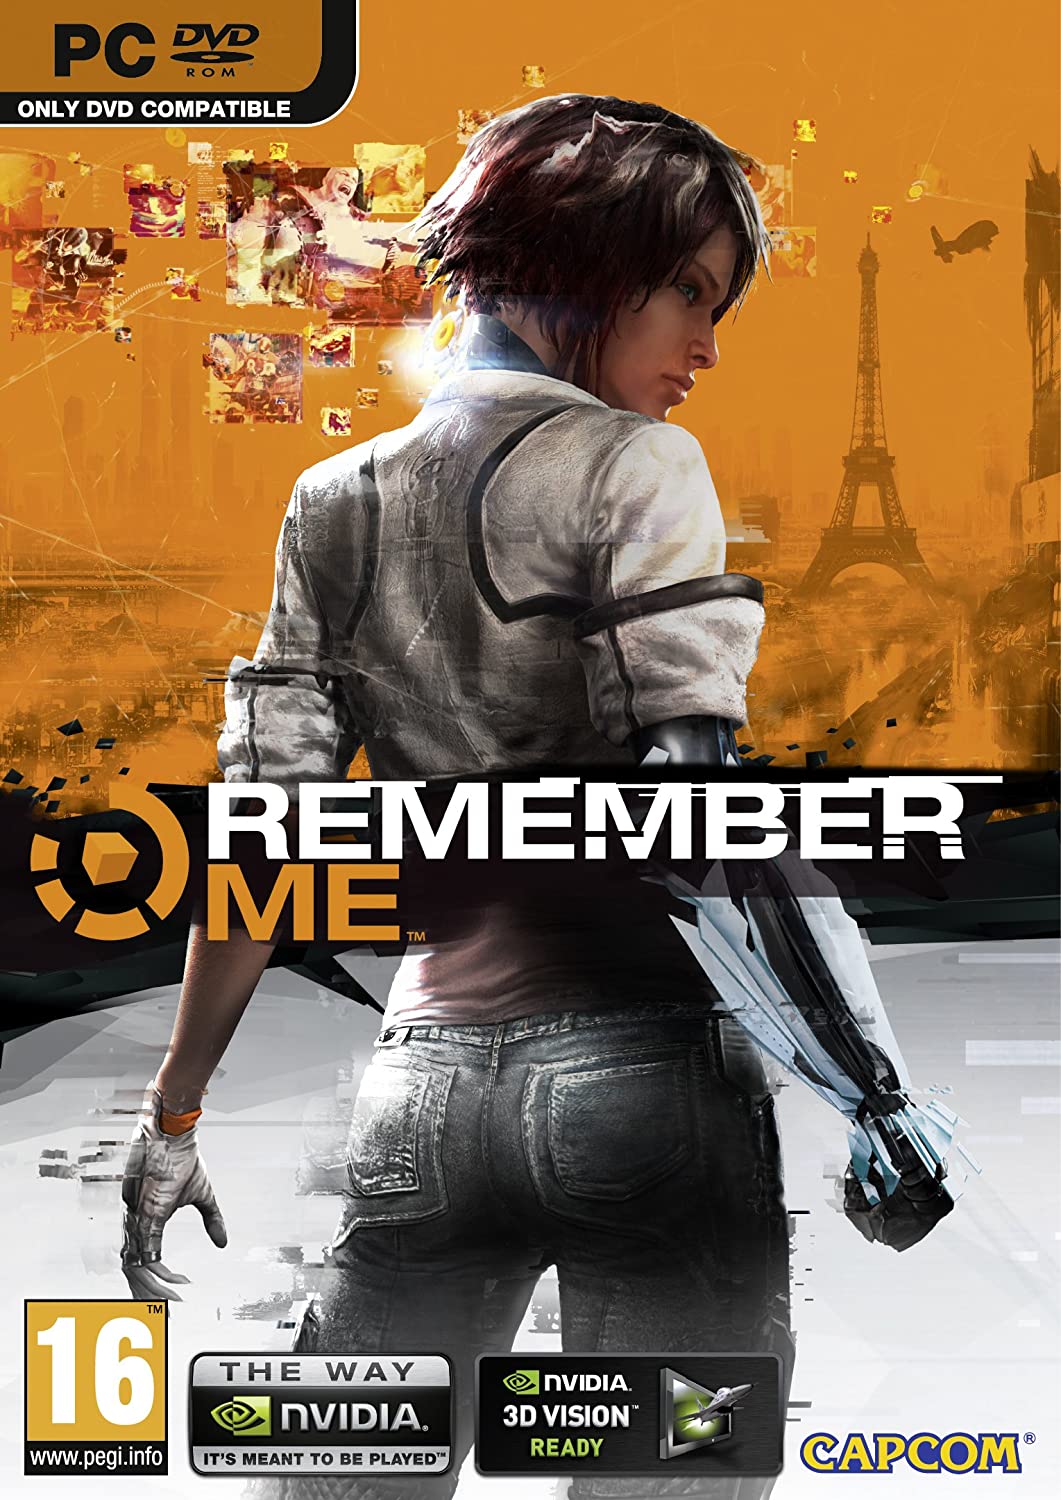 Remember Me (PC DVD)